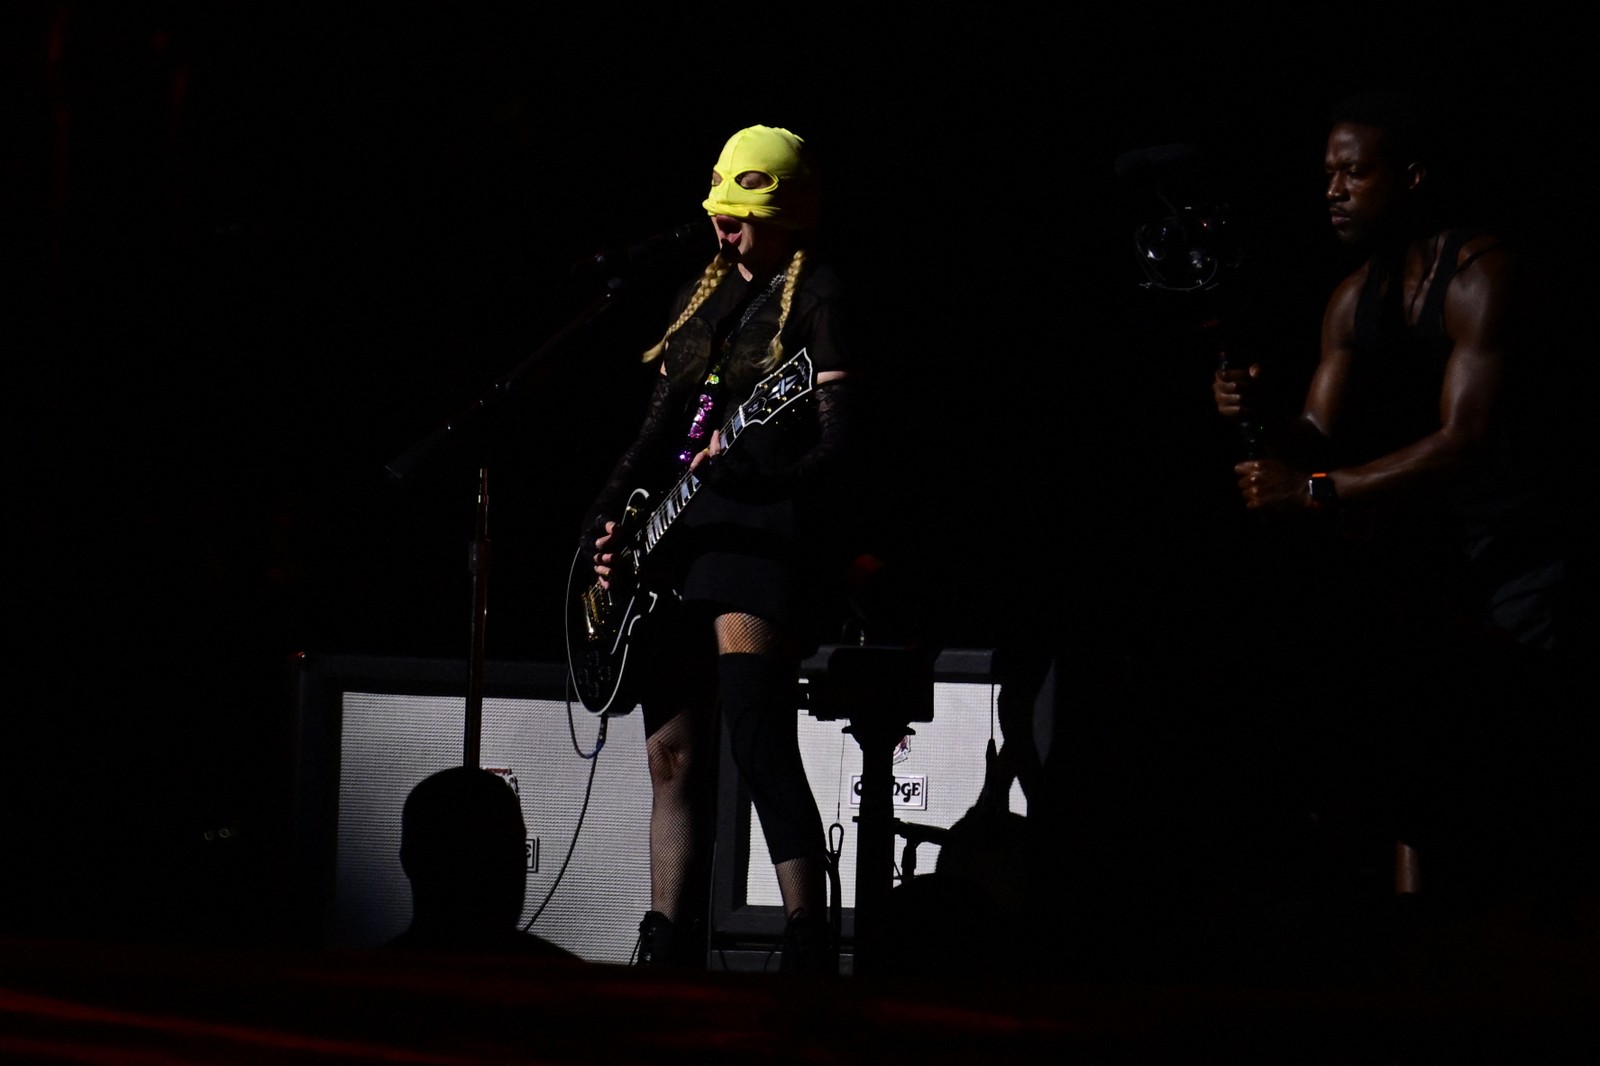 Madonna ensaia no palco na praia de Copacabana, no Rio de Janeiro. A cantora entoou alguns sucessos como "Nothing Really Matters", "Live to tell", "La isla bonita". — Foto: Foto de Pablo PORCIUNCULA/AFP